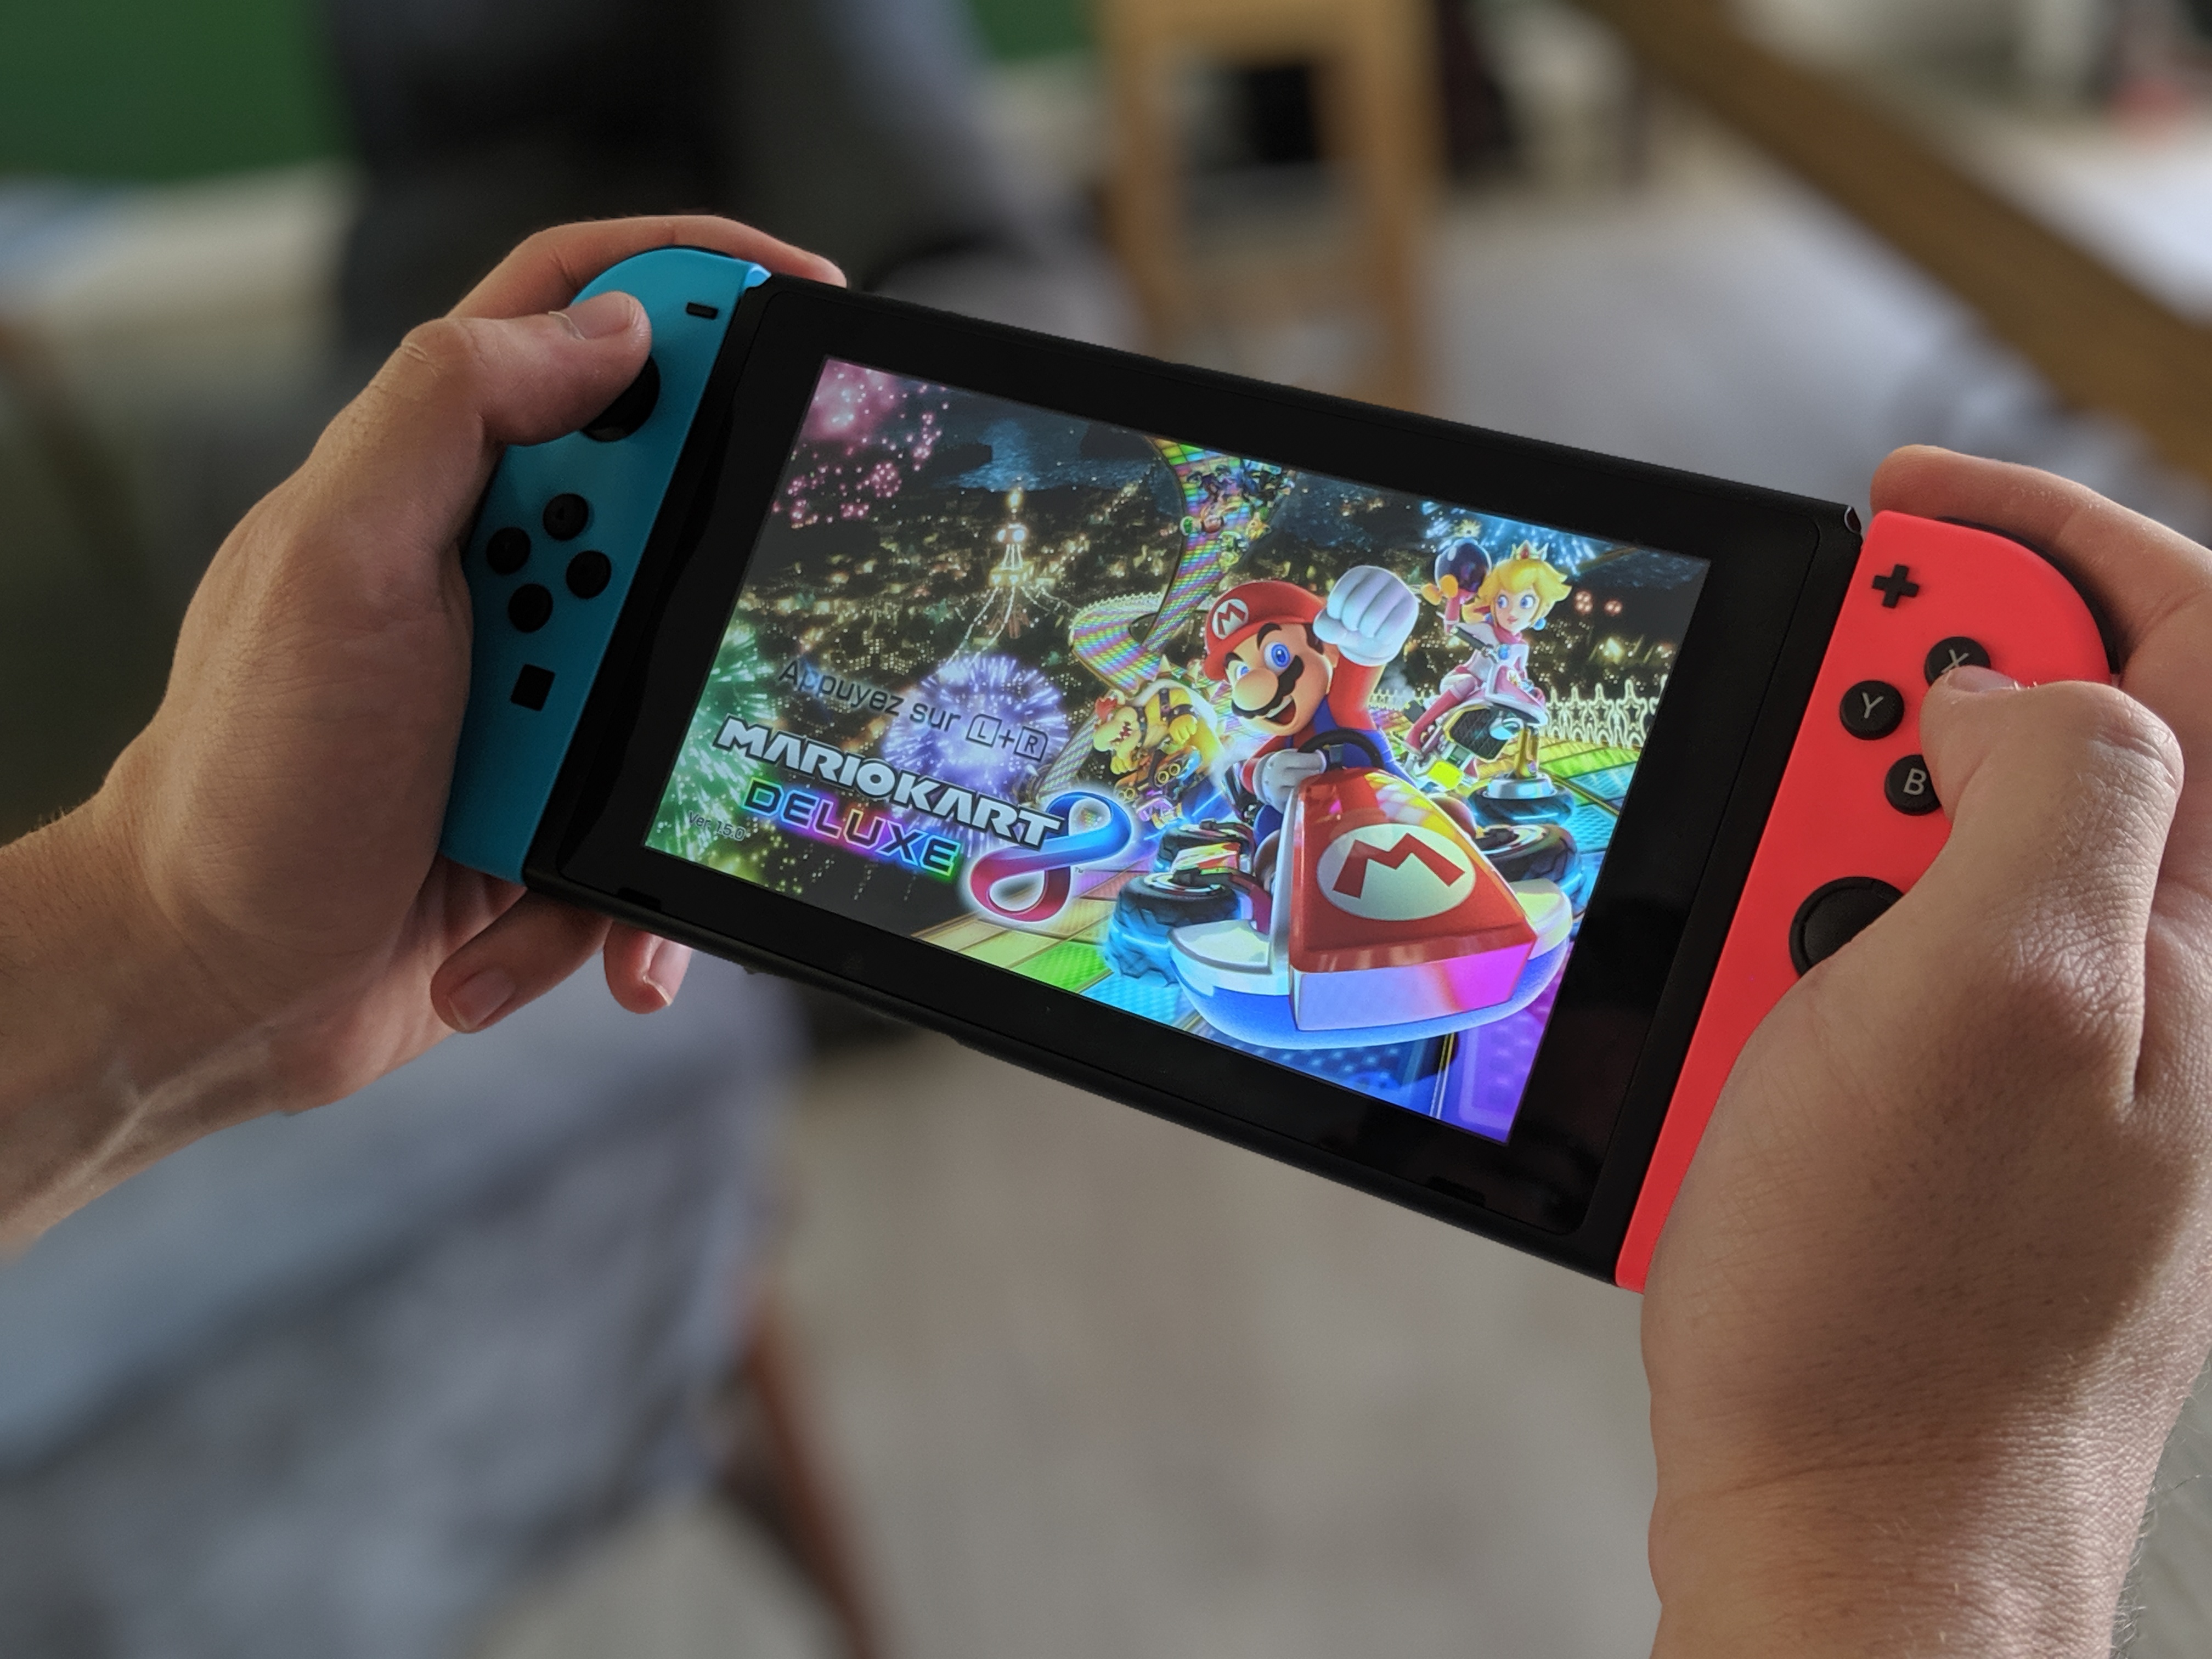 Comment Faire Une Capture D Ecran Sur Nintendo Switch Et La Partager Sur Les Reseaux Sociaux